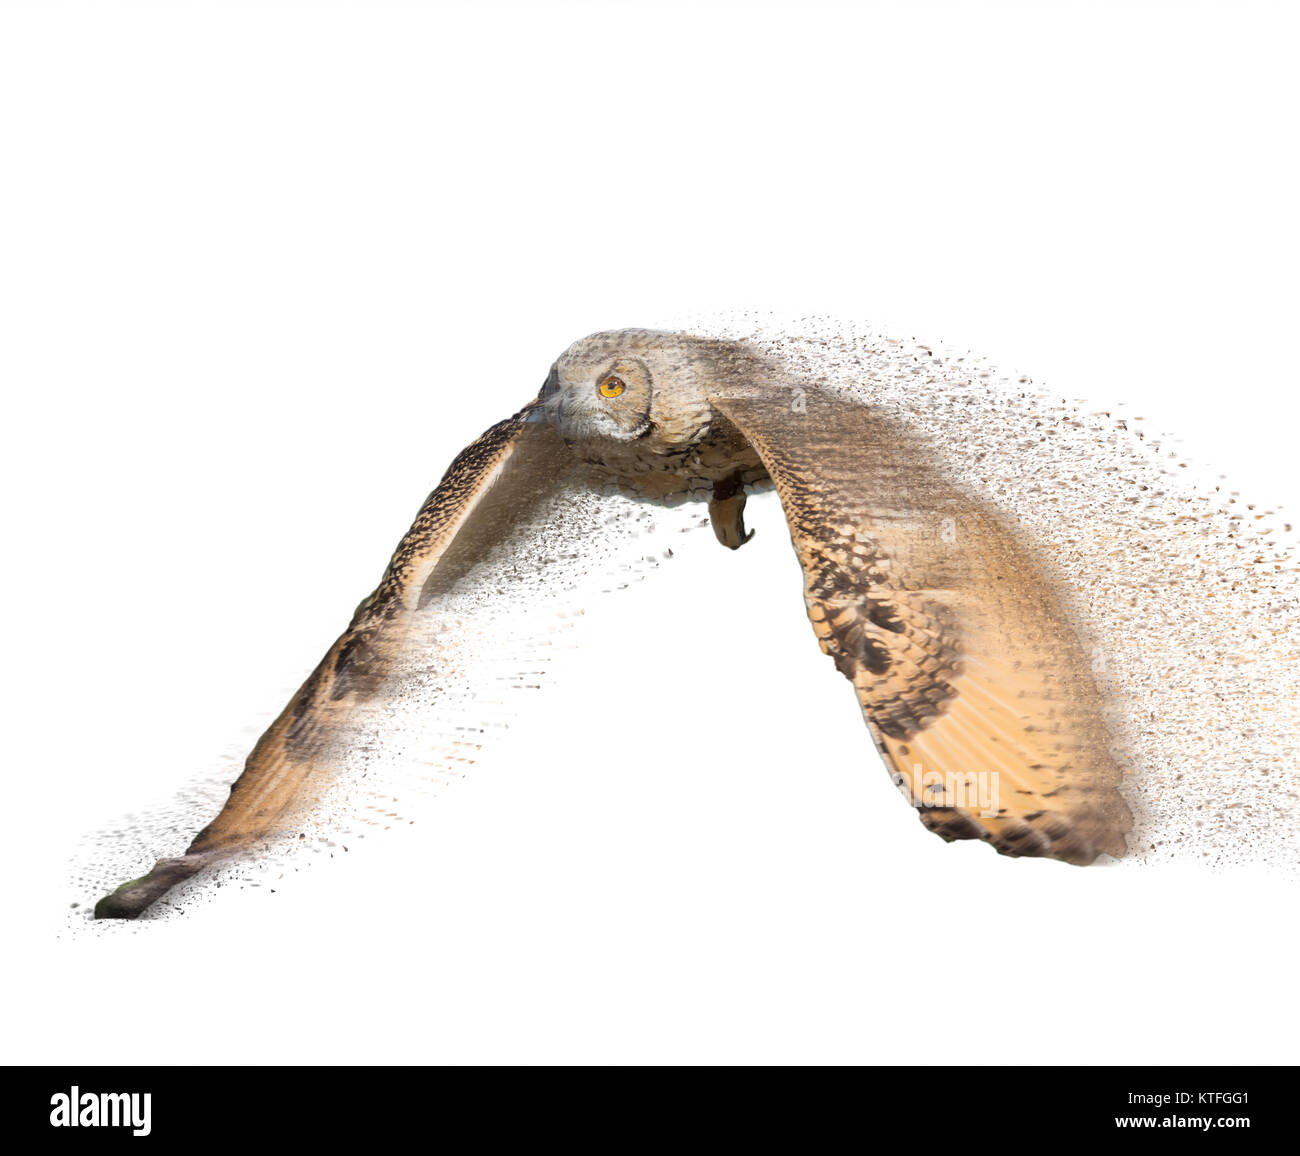 Migliorate digitalmente immagine di un gufo in volo su bianco con ali stese Foto Stock